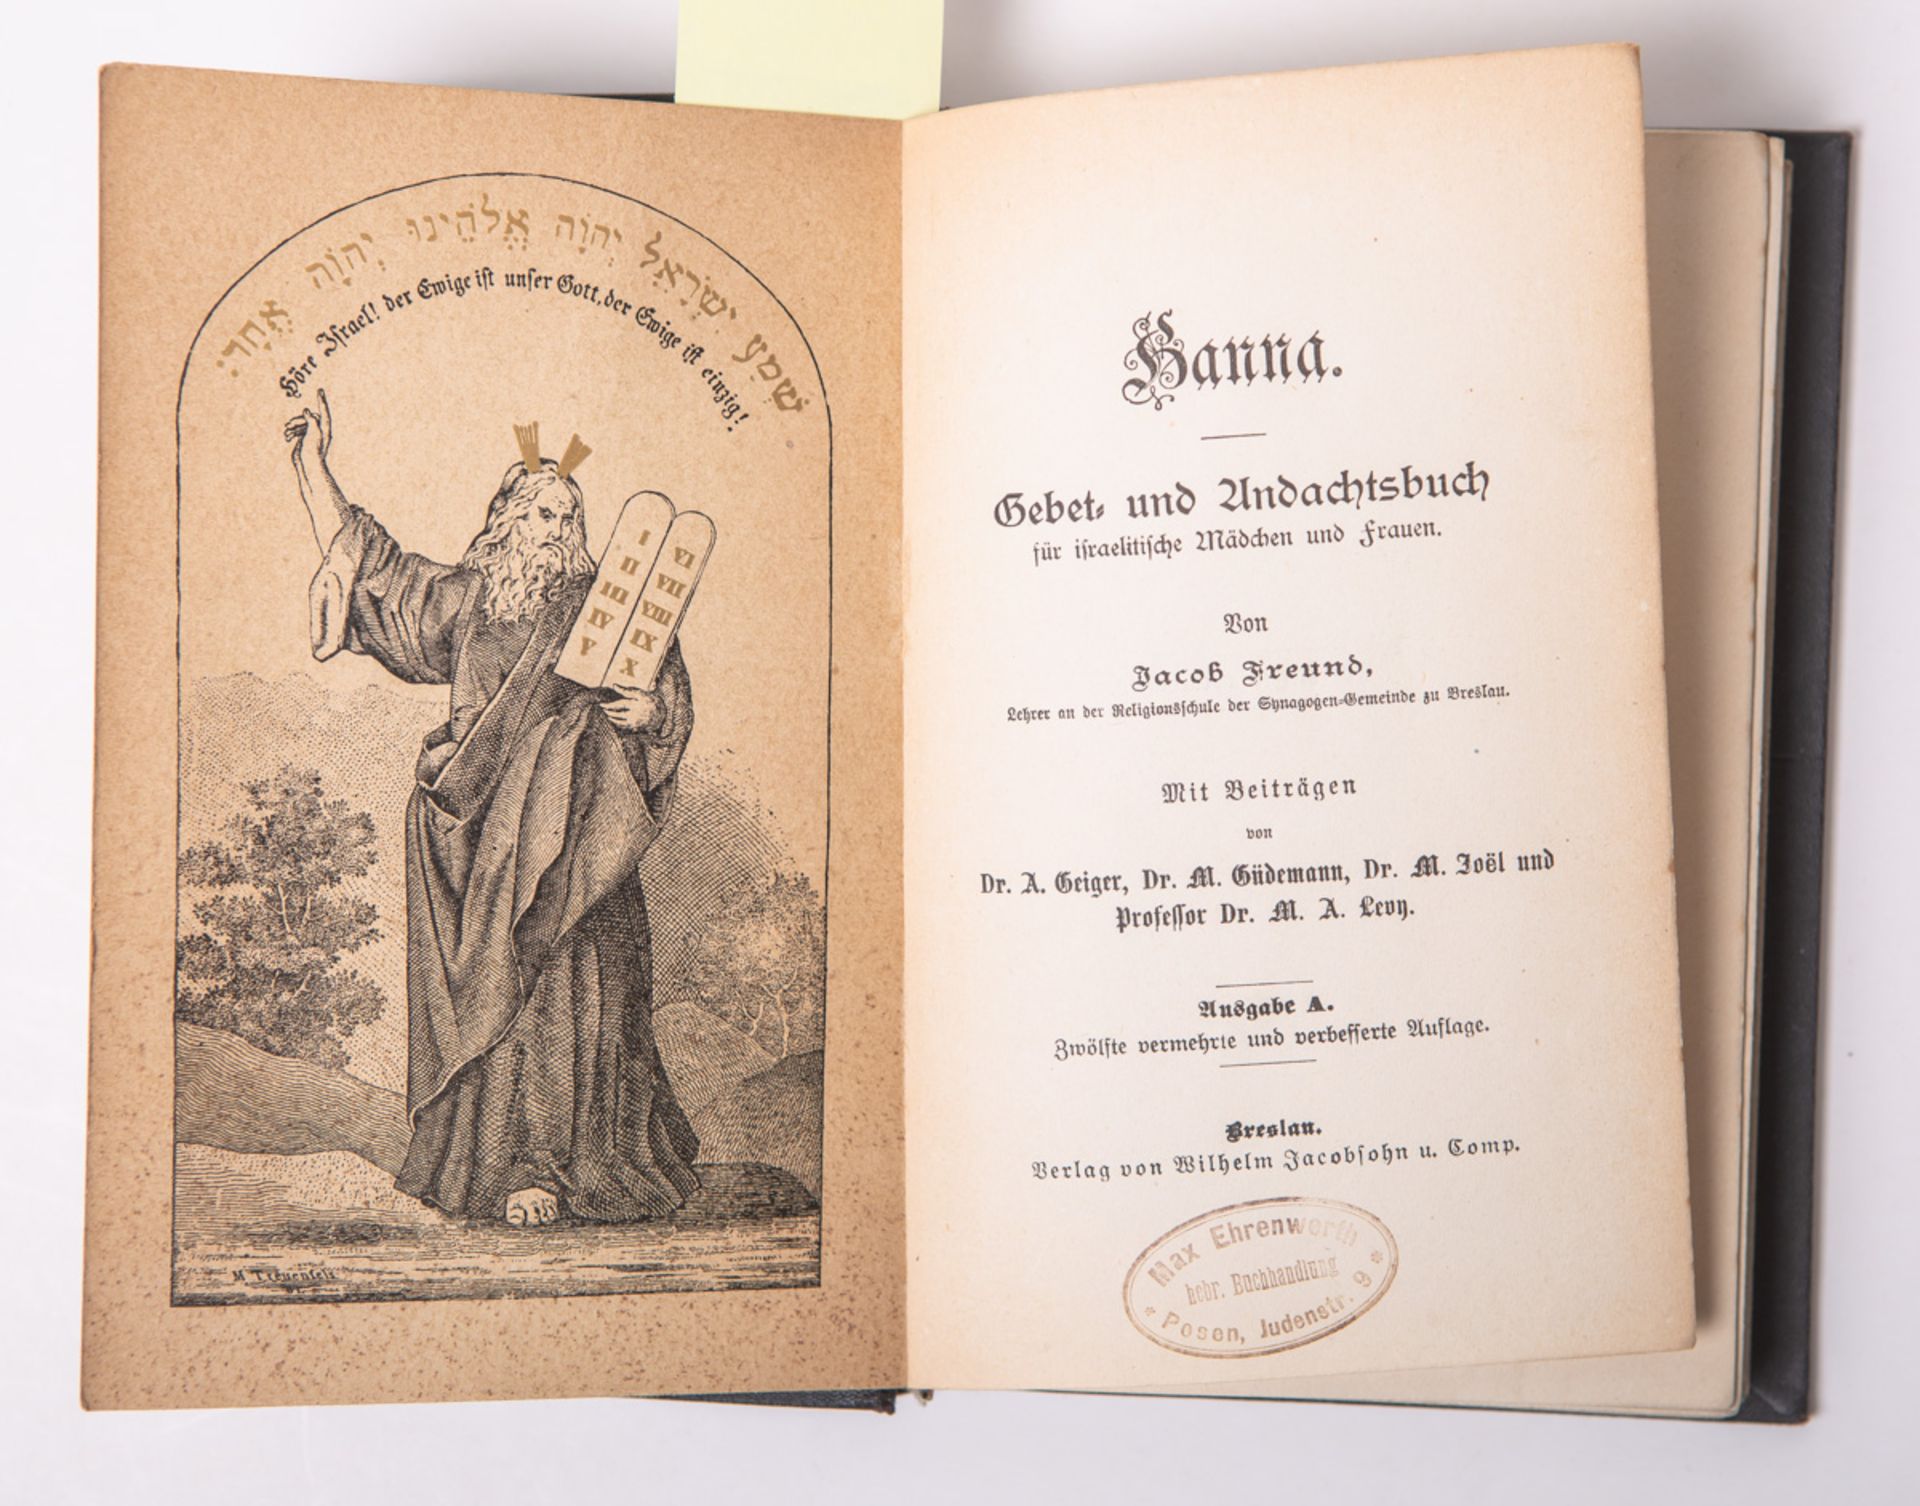 Freund, Jacob, "Hanna. Gebet- und Andachtbuch für israelitische Mädchen und Frauen" - Image 2 of 2